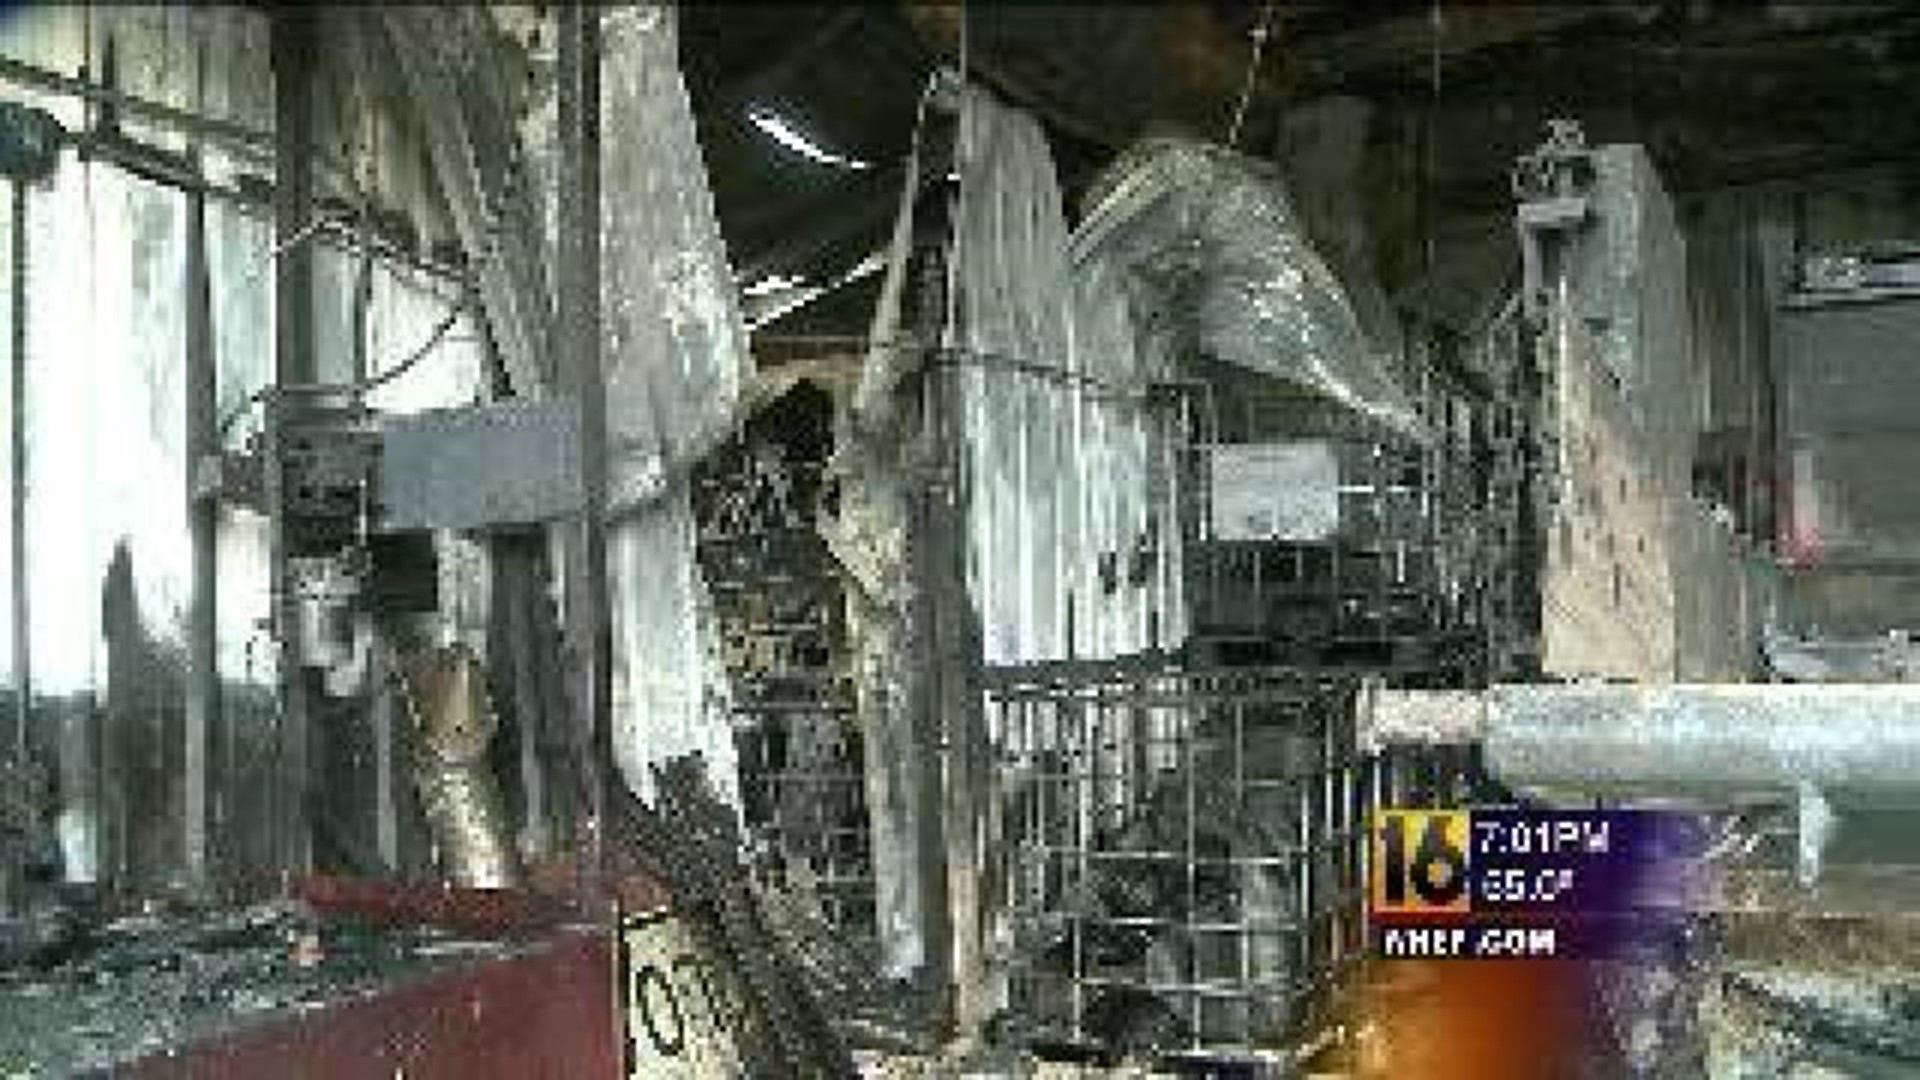 Fire Destroys Troy Township Municipal Building